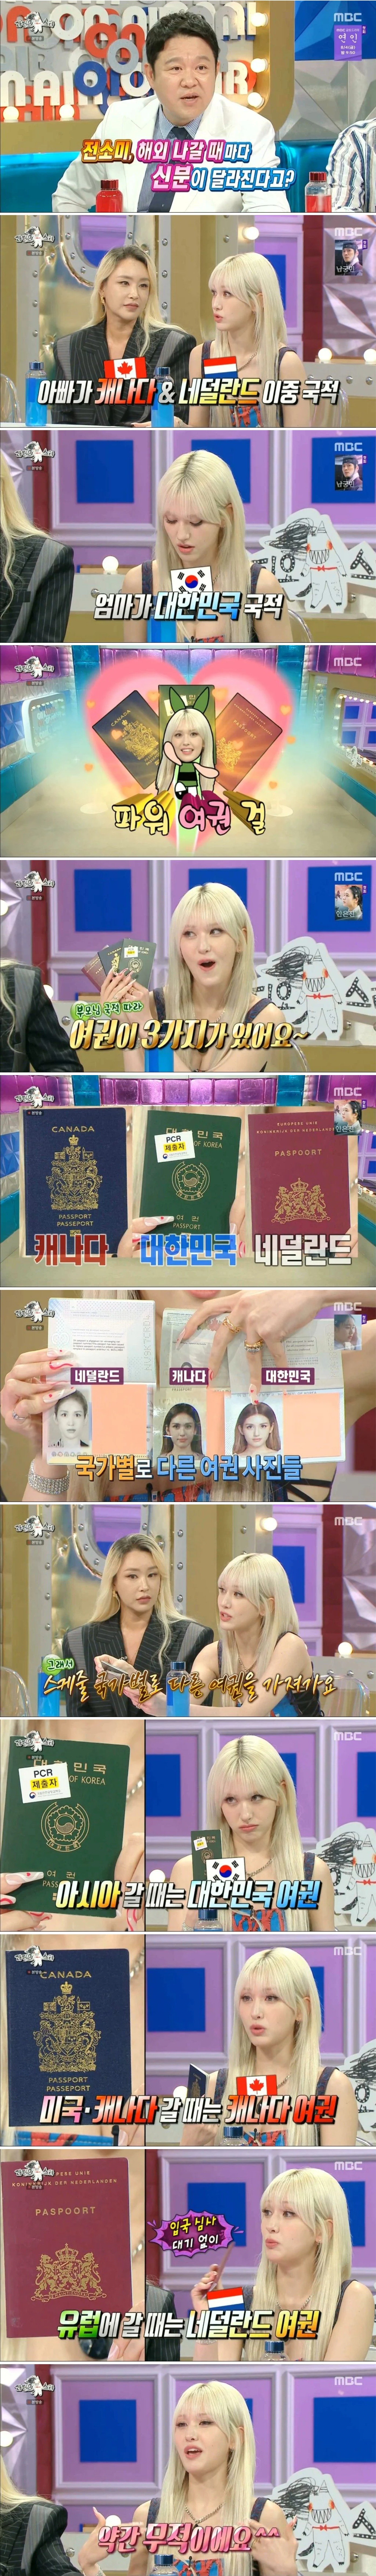 三重国籍チョン·ソミの無敵パスポートパワー